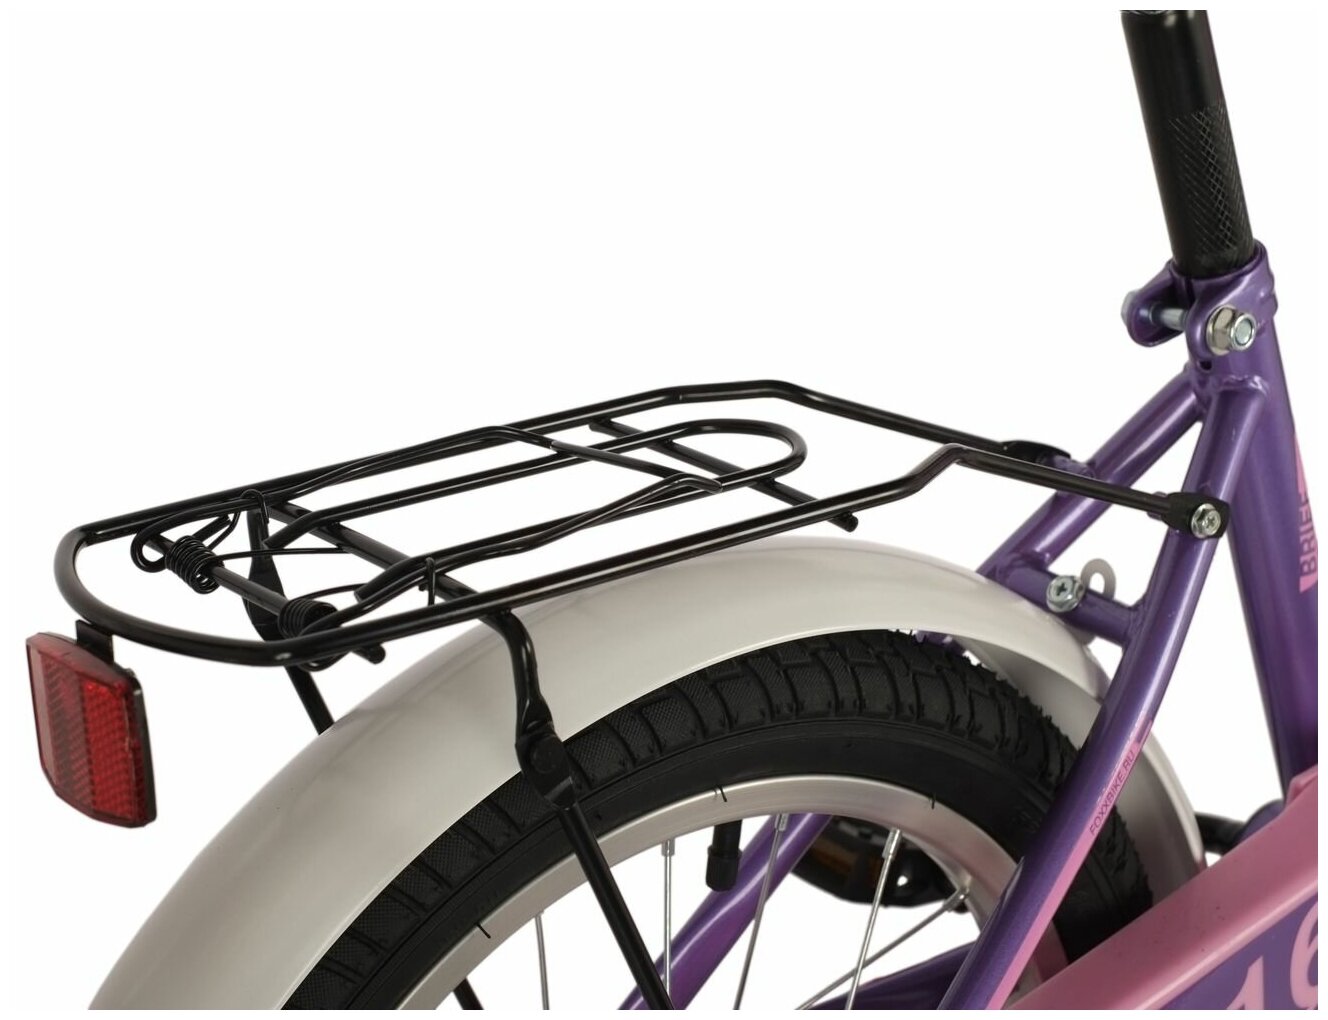 Велосипед FOXX BRIEF 16" (2021) (Велосипед FOXX 16" BRIEF фиолет, сталь, тормоз нож, крылья, багажник, перед. корзина, полная защ. цеп)